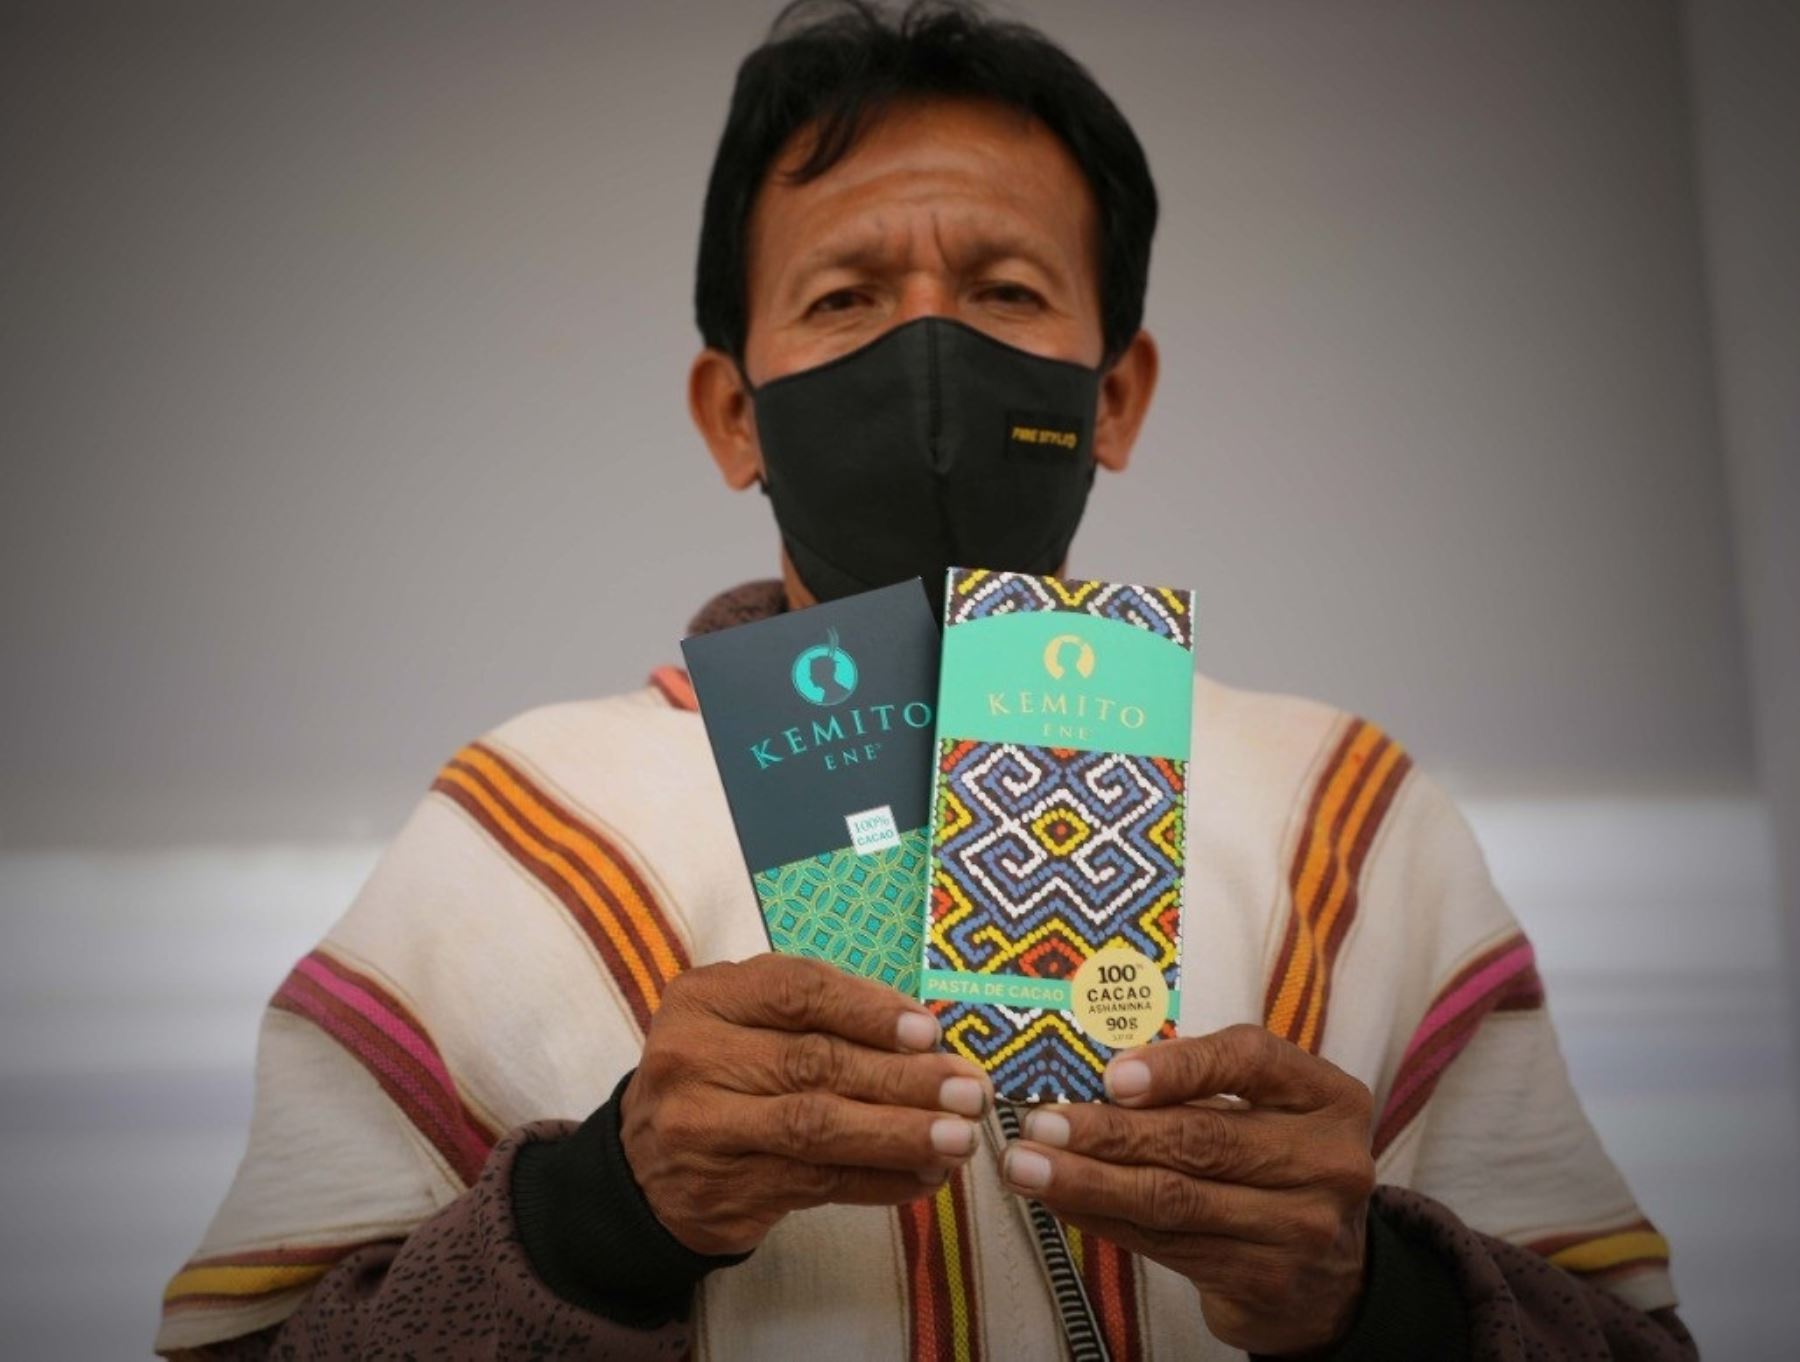 Las autoridades de salud de Junín otorgaron la certificación sanitaria a la planta procesadora de cacao de la Asociación Kemito-Ene, conformada por agricultores asháninkas de Satipo.Foto: ANDINA./Difusión